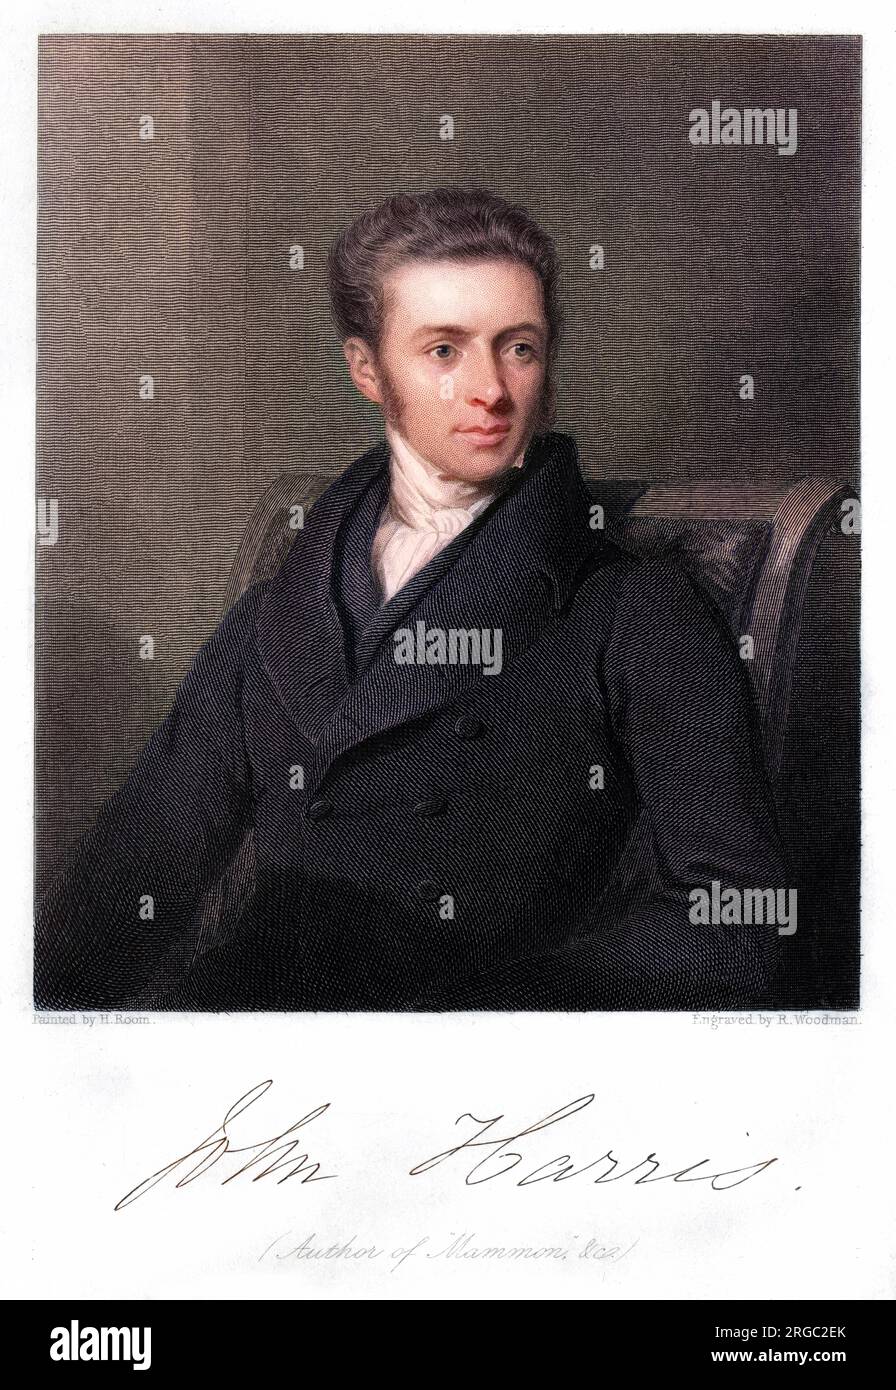 JOHN HARRIS Churchman : directeur du New College, Londres, et auteur de 'ammon' : assis. avec son autographe Banque D'Images